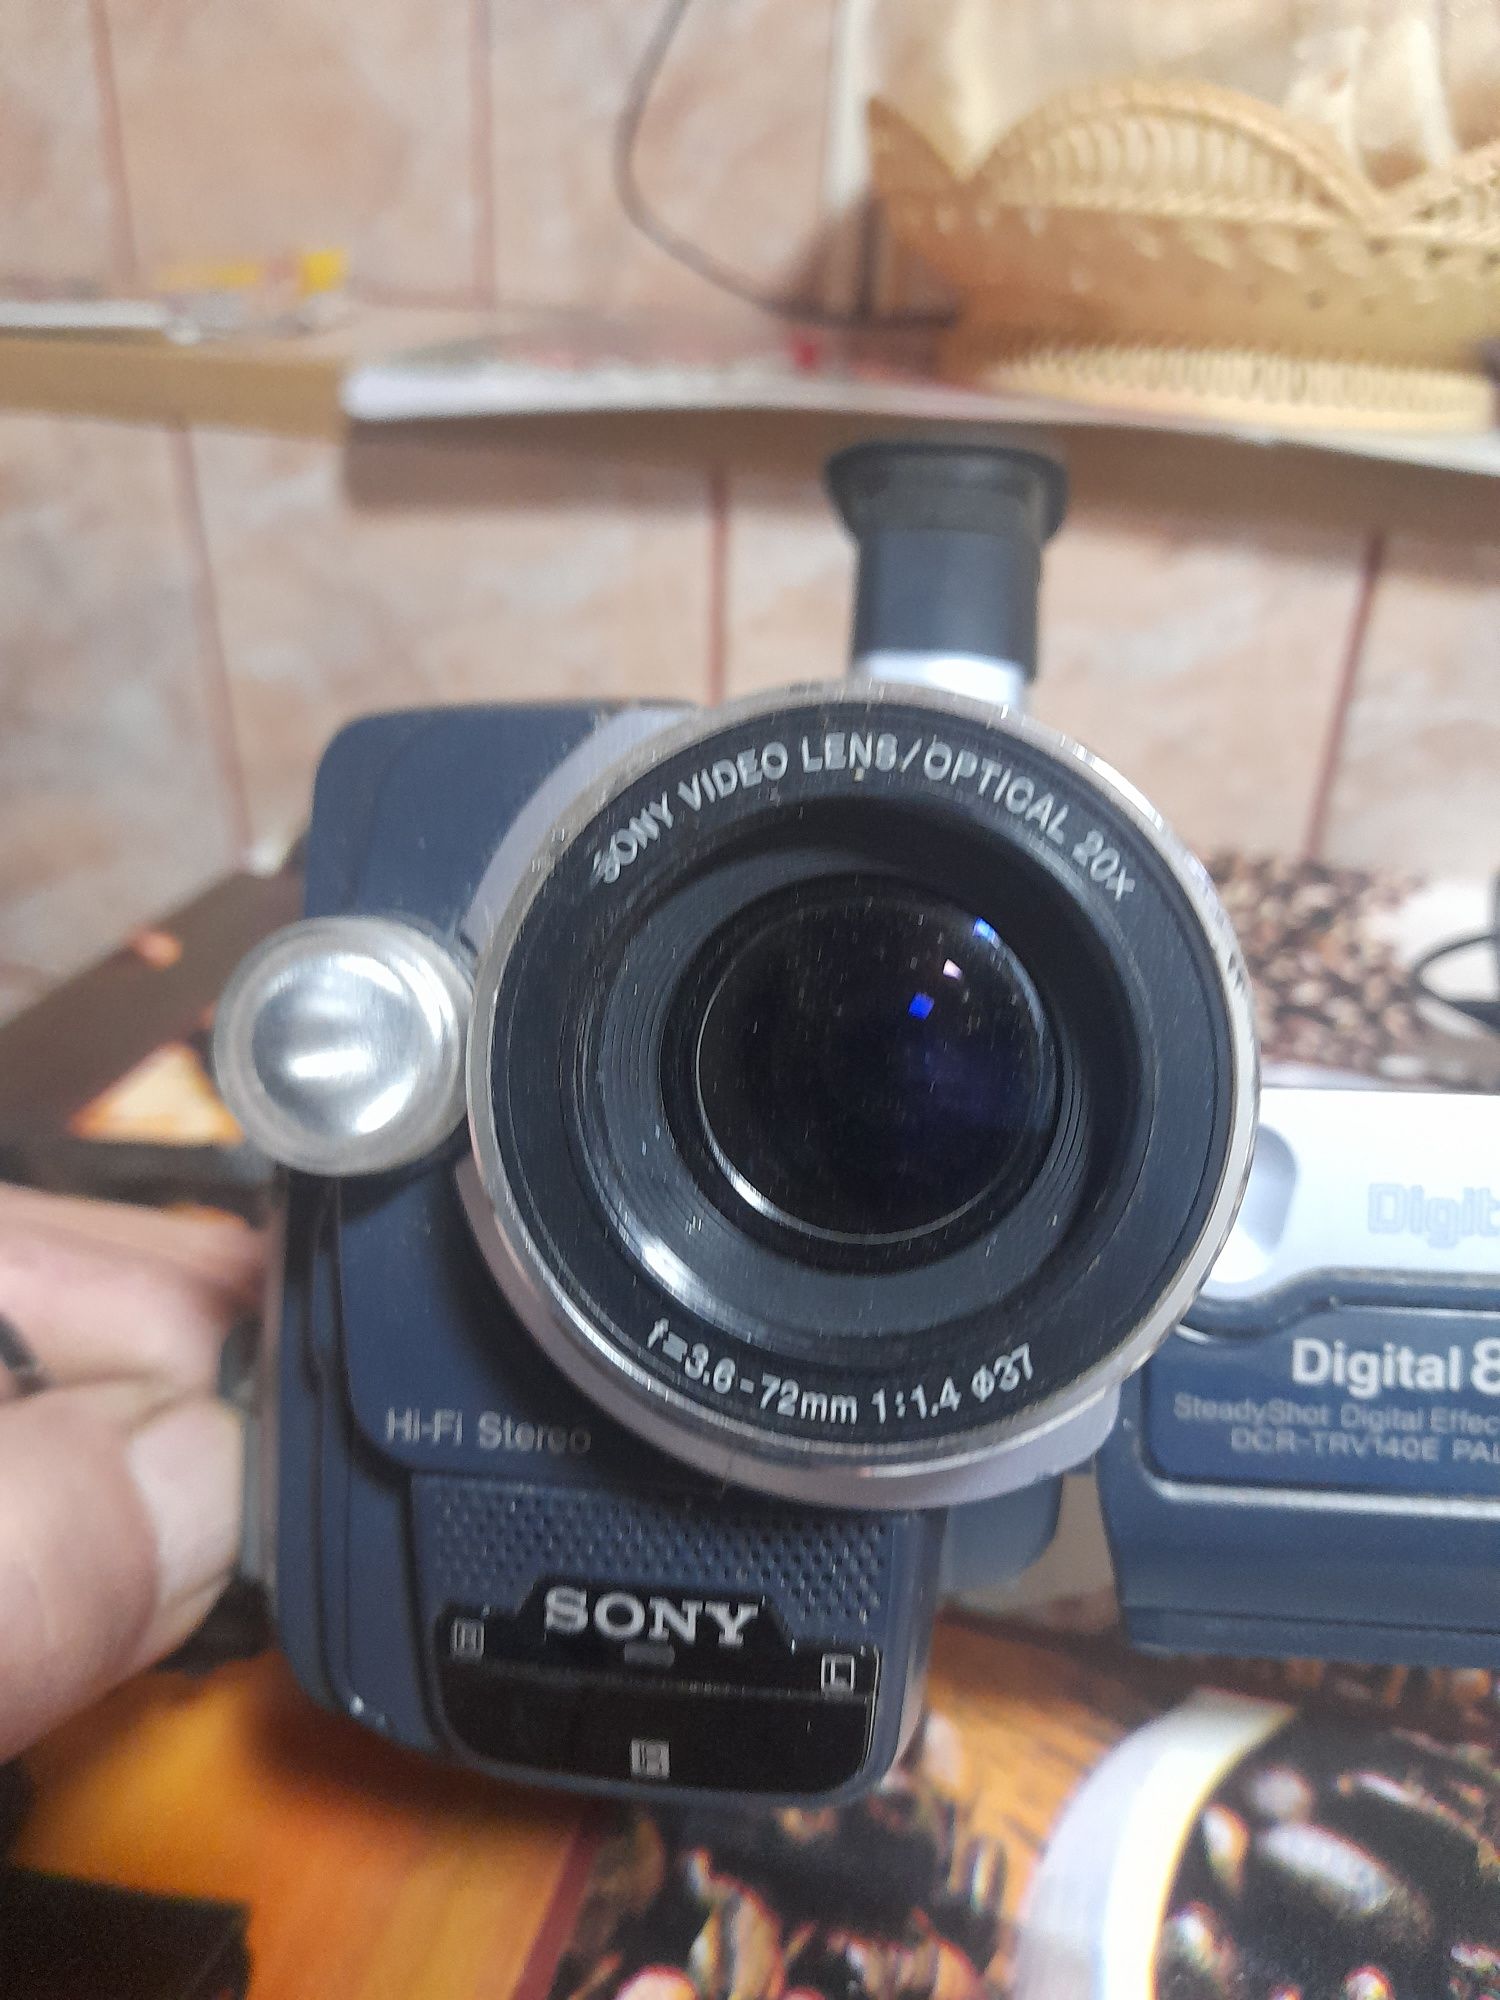 Mini camera Sony în stare bună de funcționare.